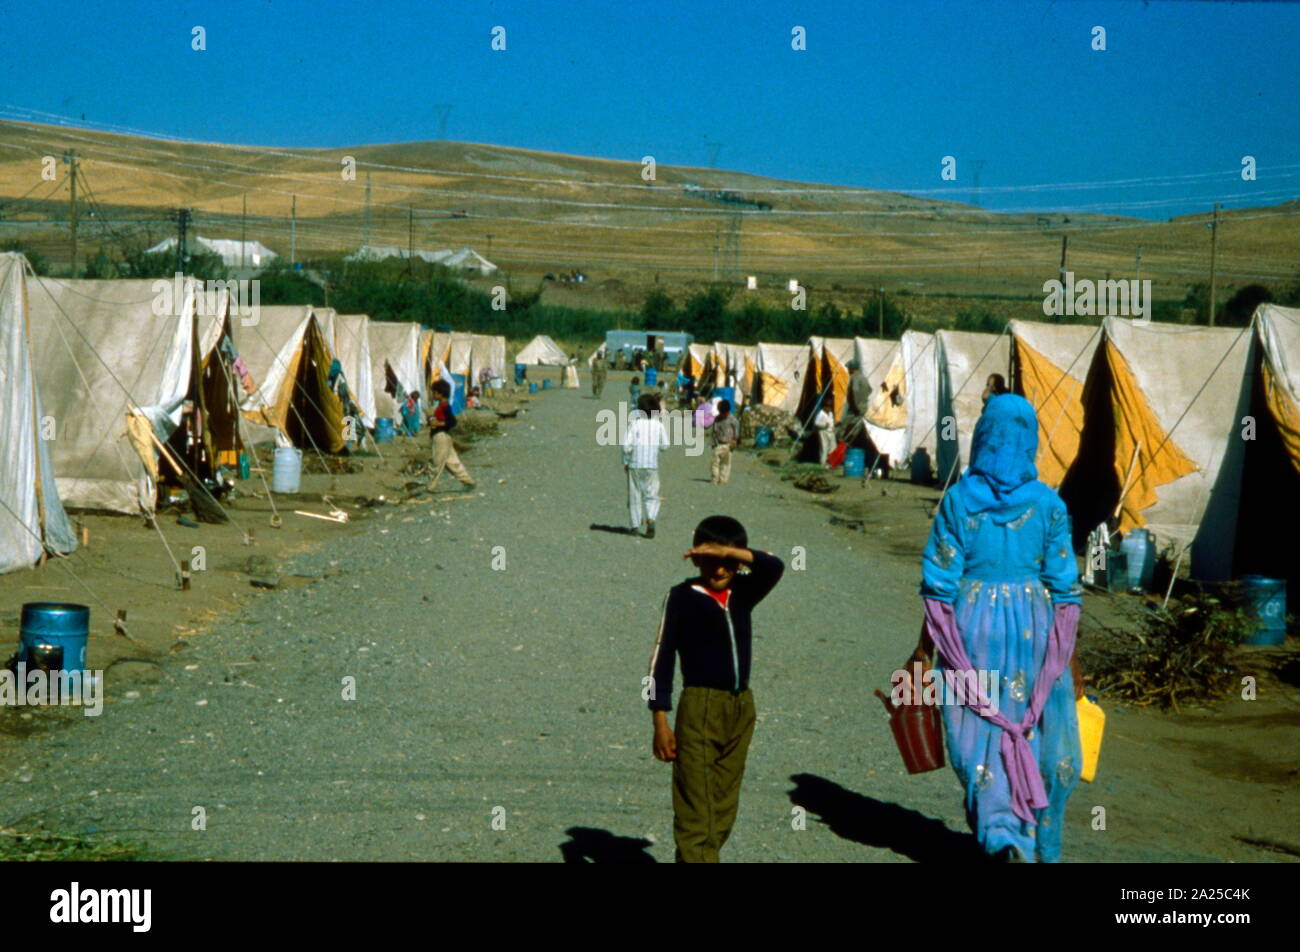 Irakische Flüchtlinge in der Türkei während des Iran-Irak-Krieges, 1988. Diesen bewaffneten Konflikt zwischen Iran und Irak, begann am 22. September 1980, als der Irak den Iran überfallen, und endete am 20. August 1988, als der Iran die UNO vermittelten Waffenstillstand akzeptiert. Stockfoto